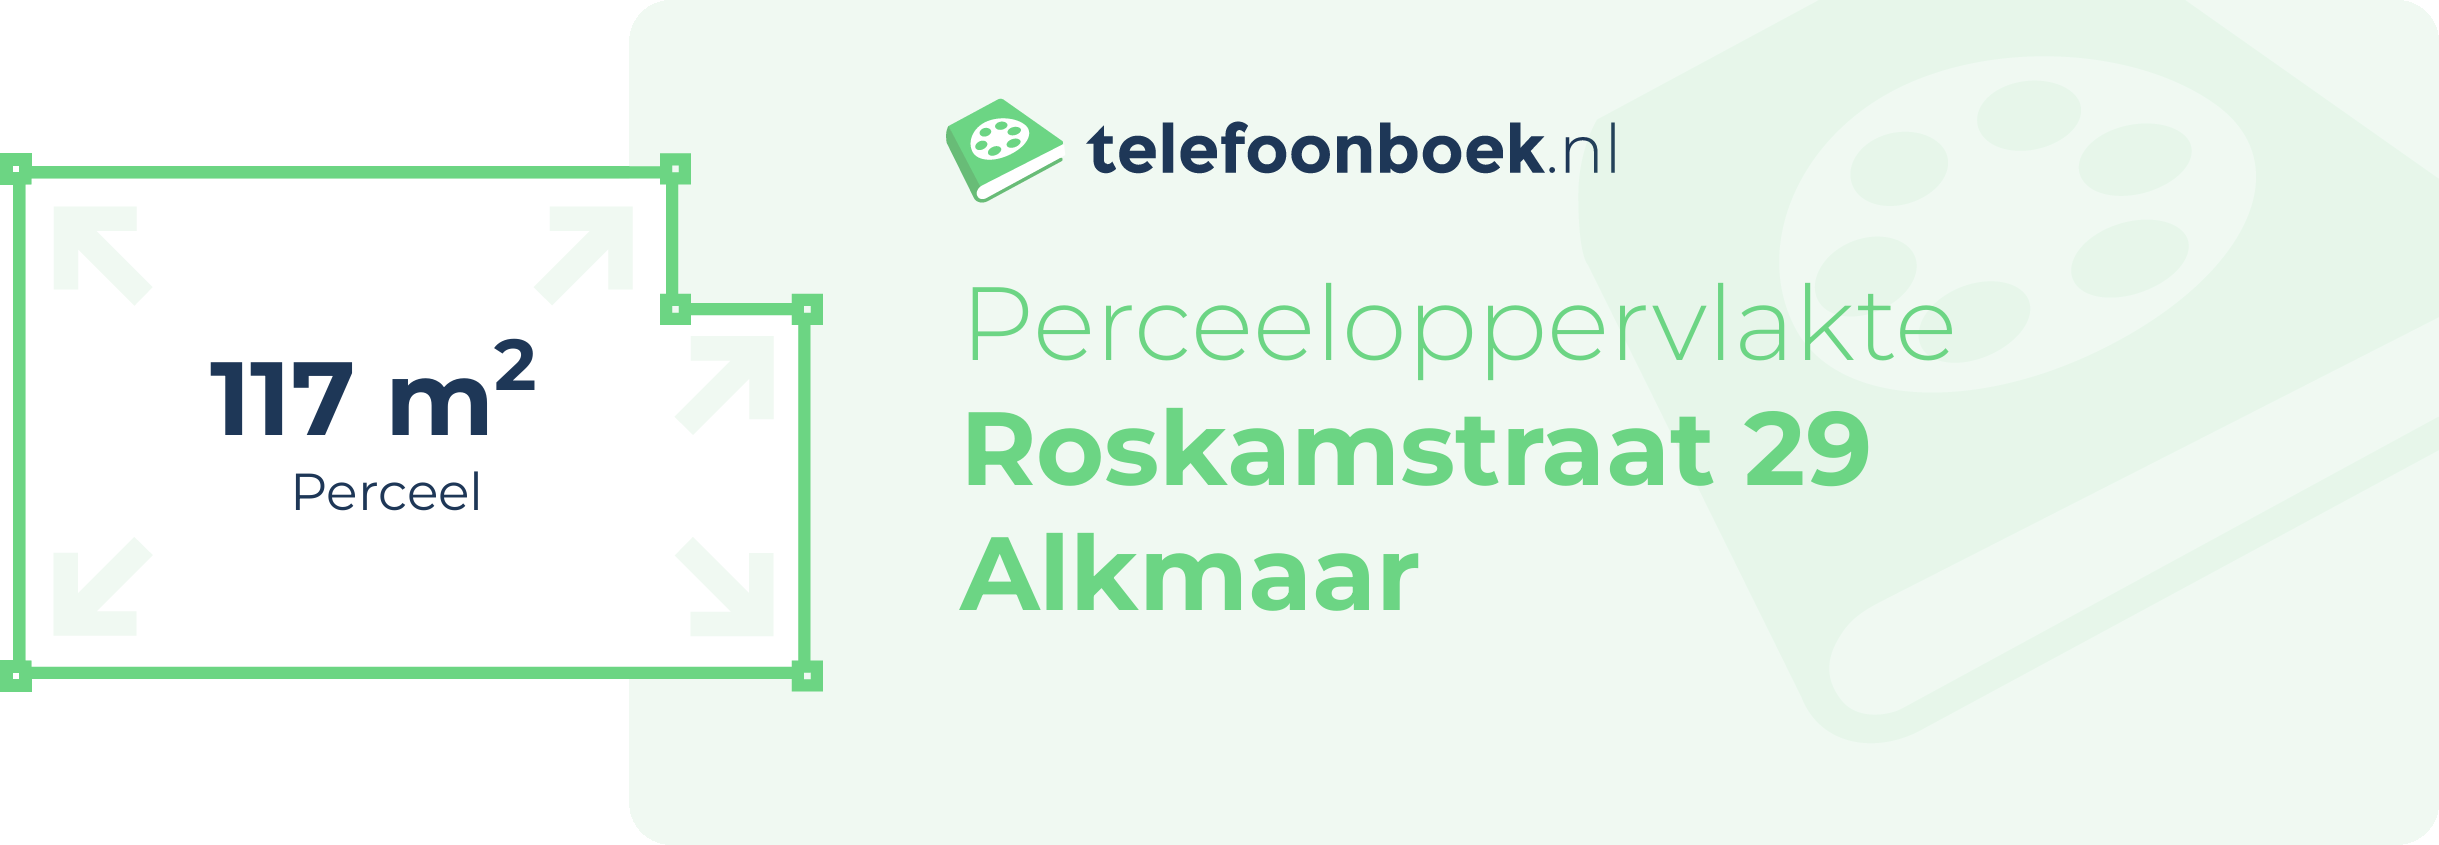 Perceeloppervlakte Roskamstraat 29 Alkmaar